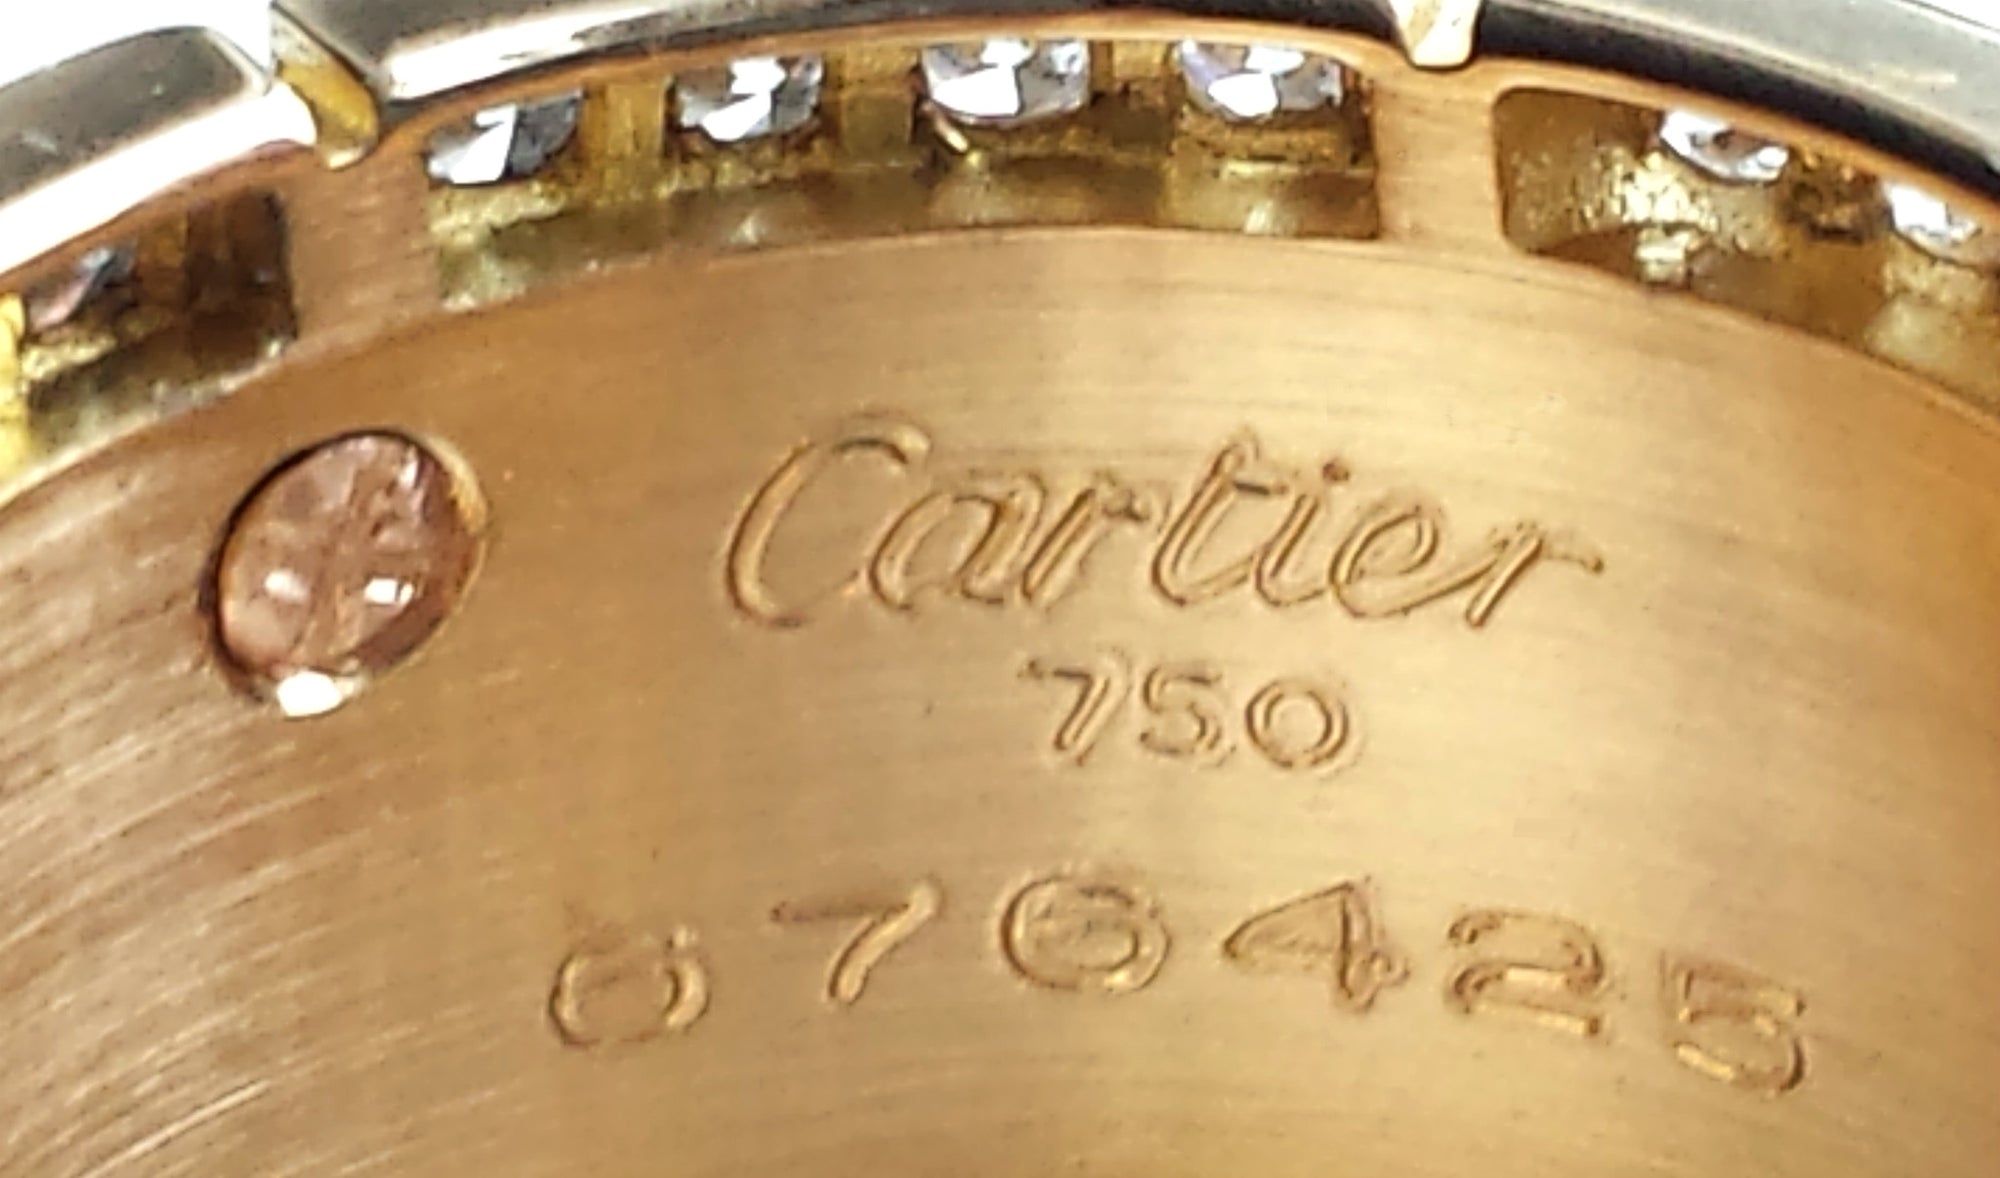 Cartier Diamond & 18K Yellow Gold Walking Panthere Ring, Size 55